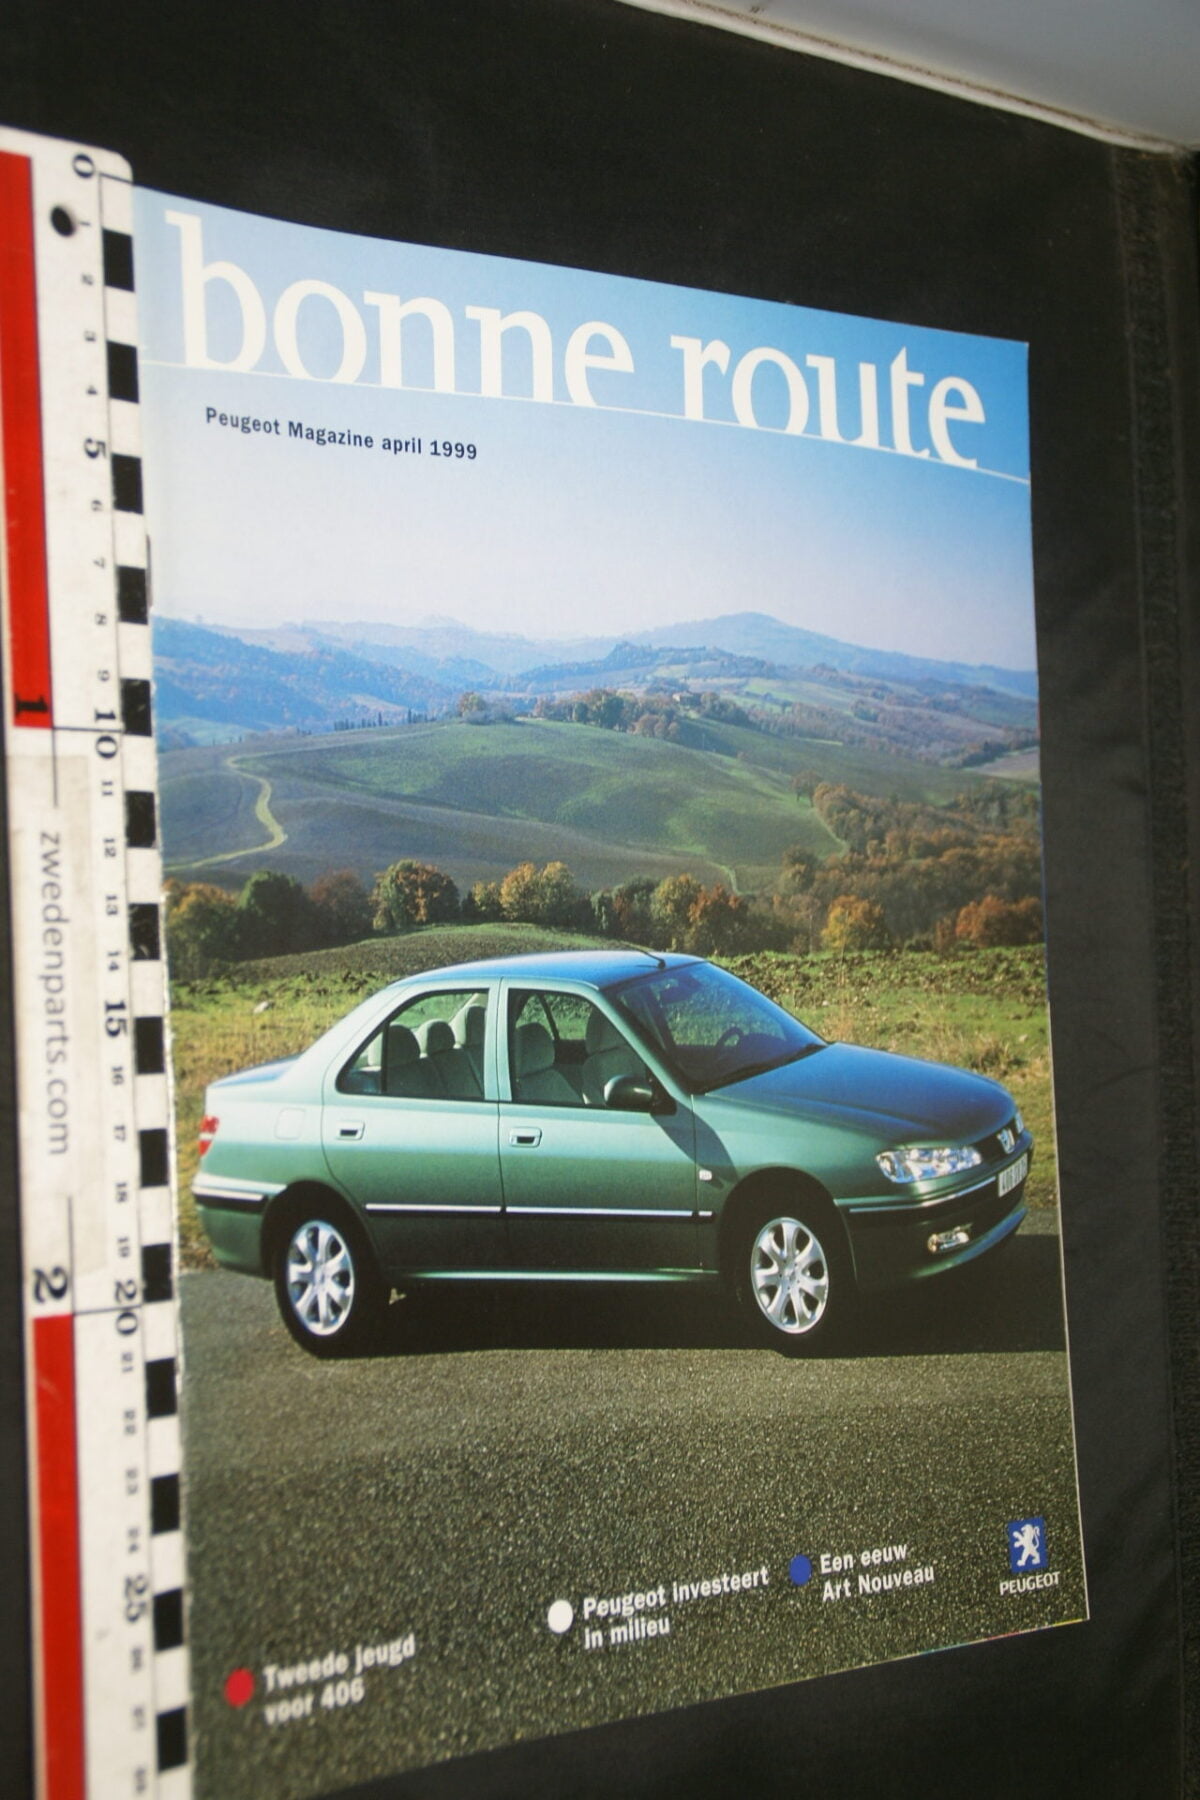 DSC08422 tijdschrift Peugeot Bonne Route 1999 april